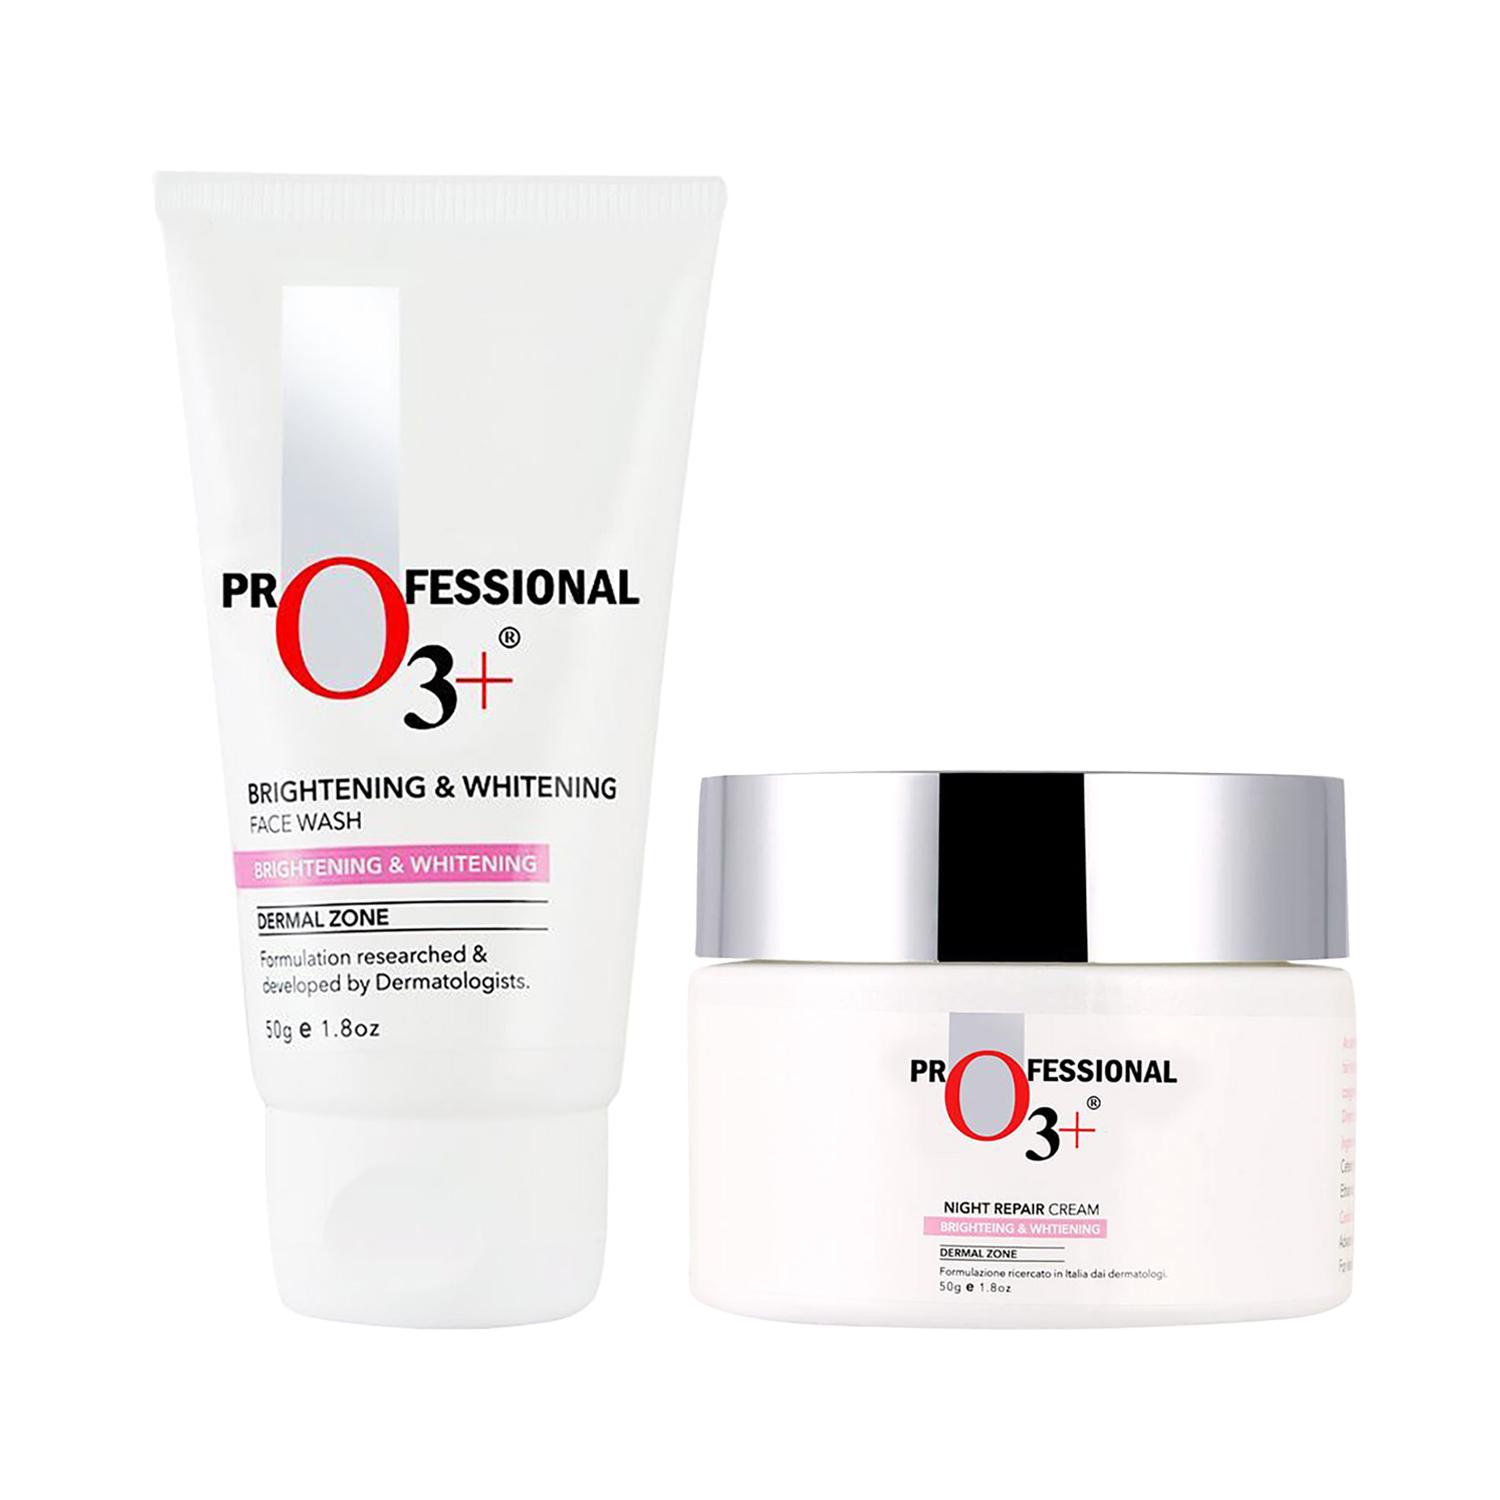 O3+ Dermal Zone Night Repair Cream - Brightening & Whitening (50g) & Face Wash (50g) Combo